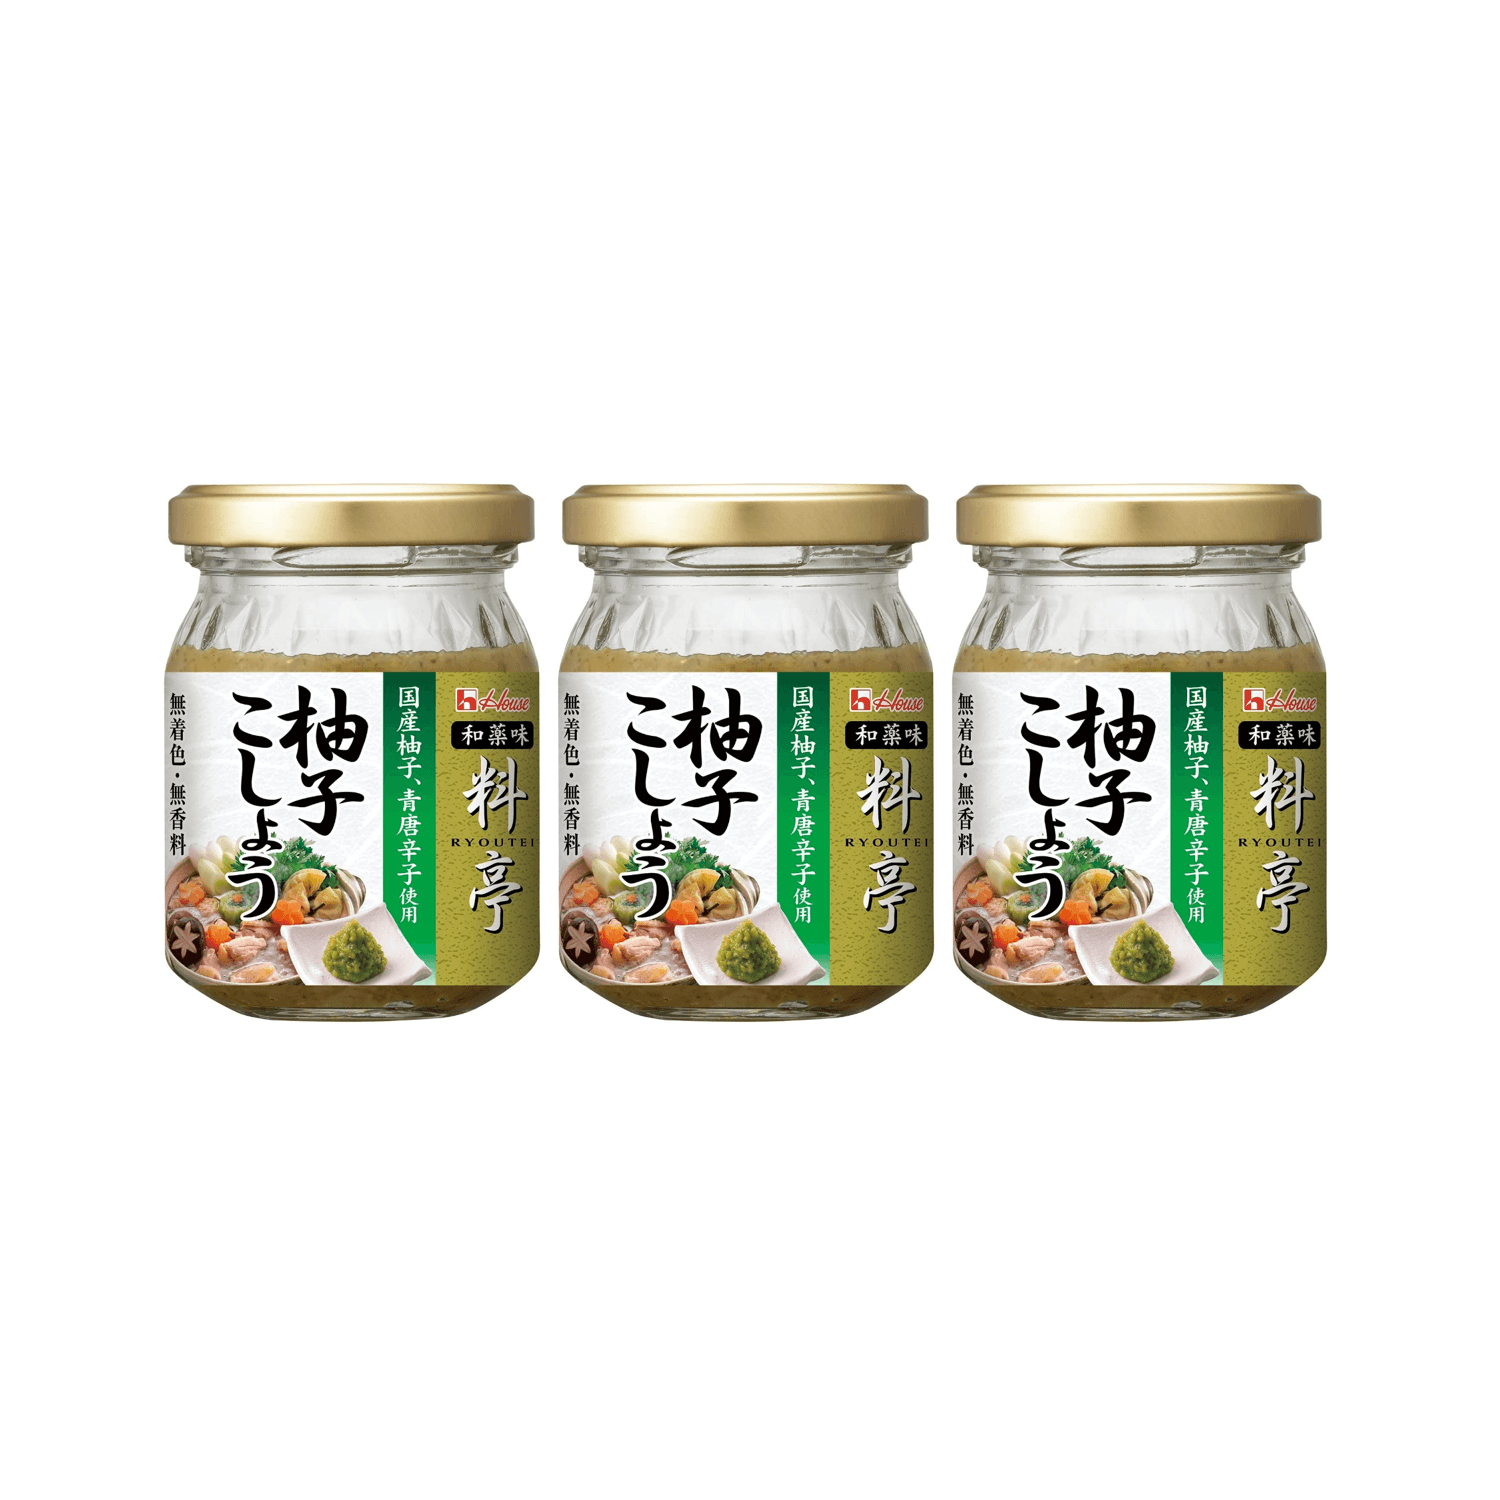 HOUSE Ryoutei Yuzu Kosho Sauce with Japanese Yuzu Peel and Green Chili For Yosenabe, Mizutaki, Dumpling,  Sushi, Sashimi (Made in Japan) 70g x 3 bottles